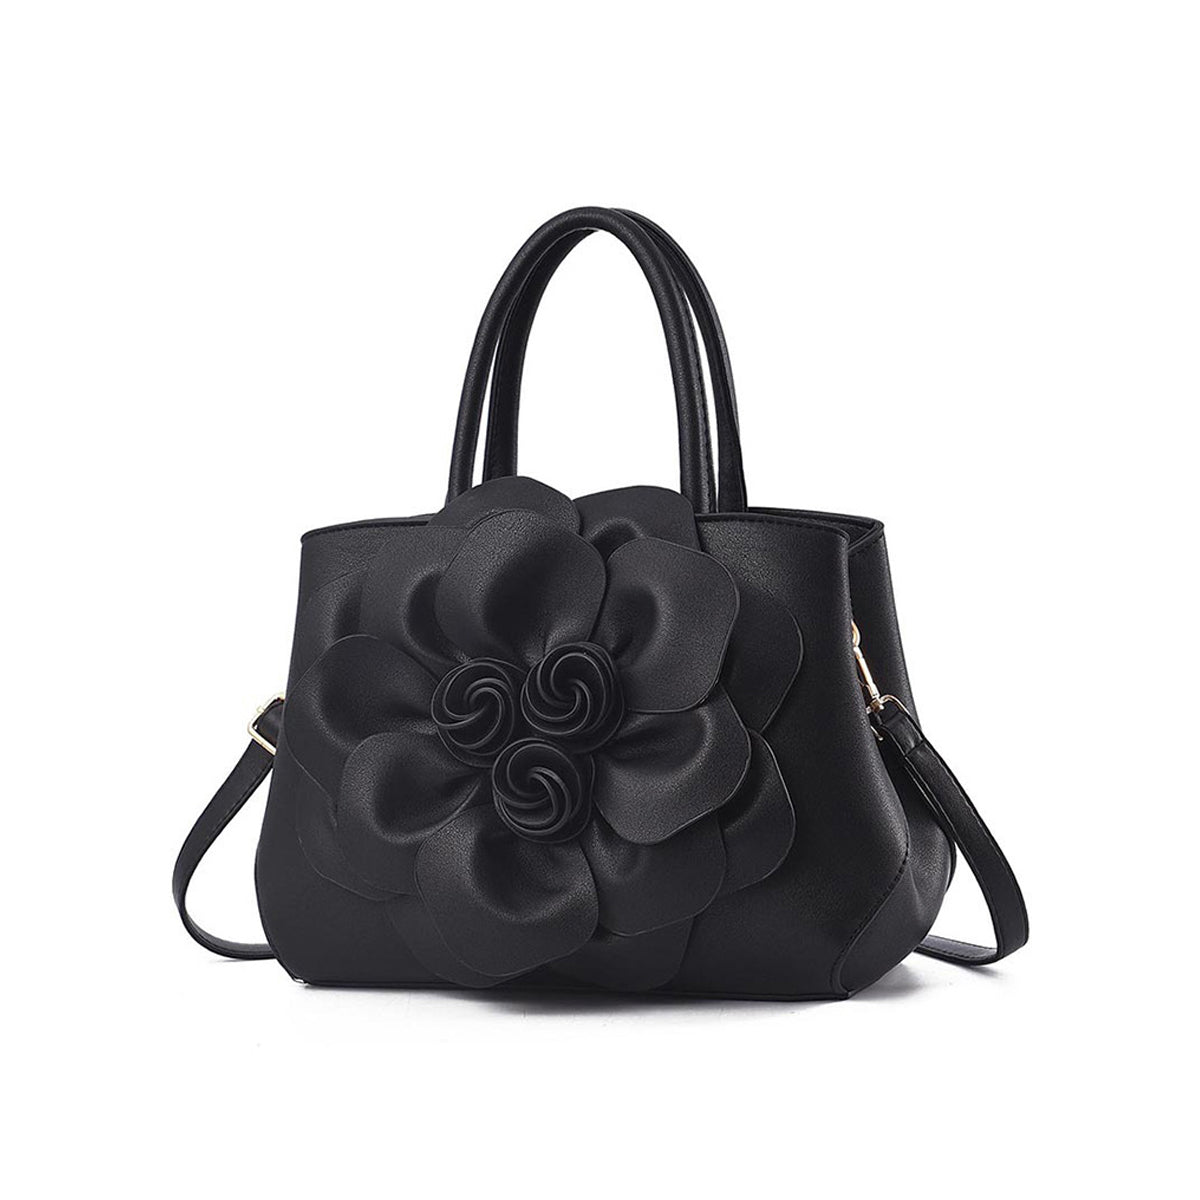 New Fashion Simple And Extravagant Ladies Handbag